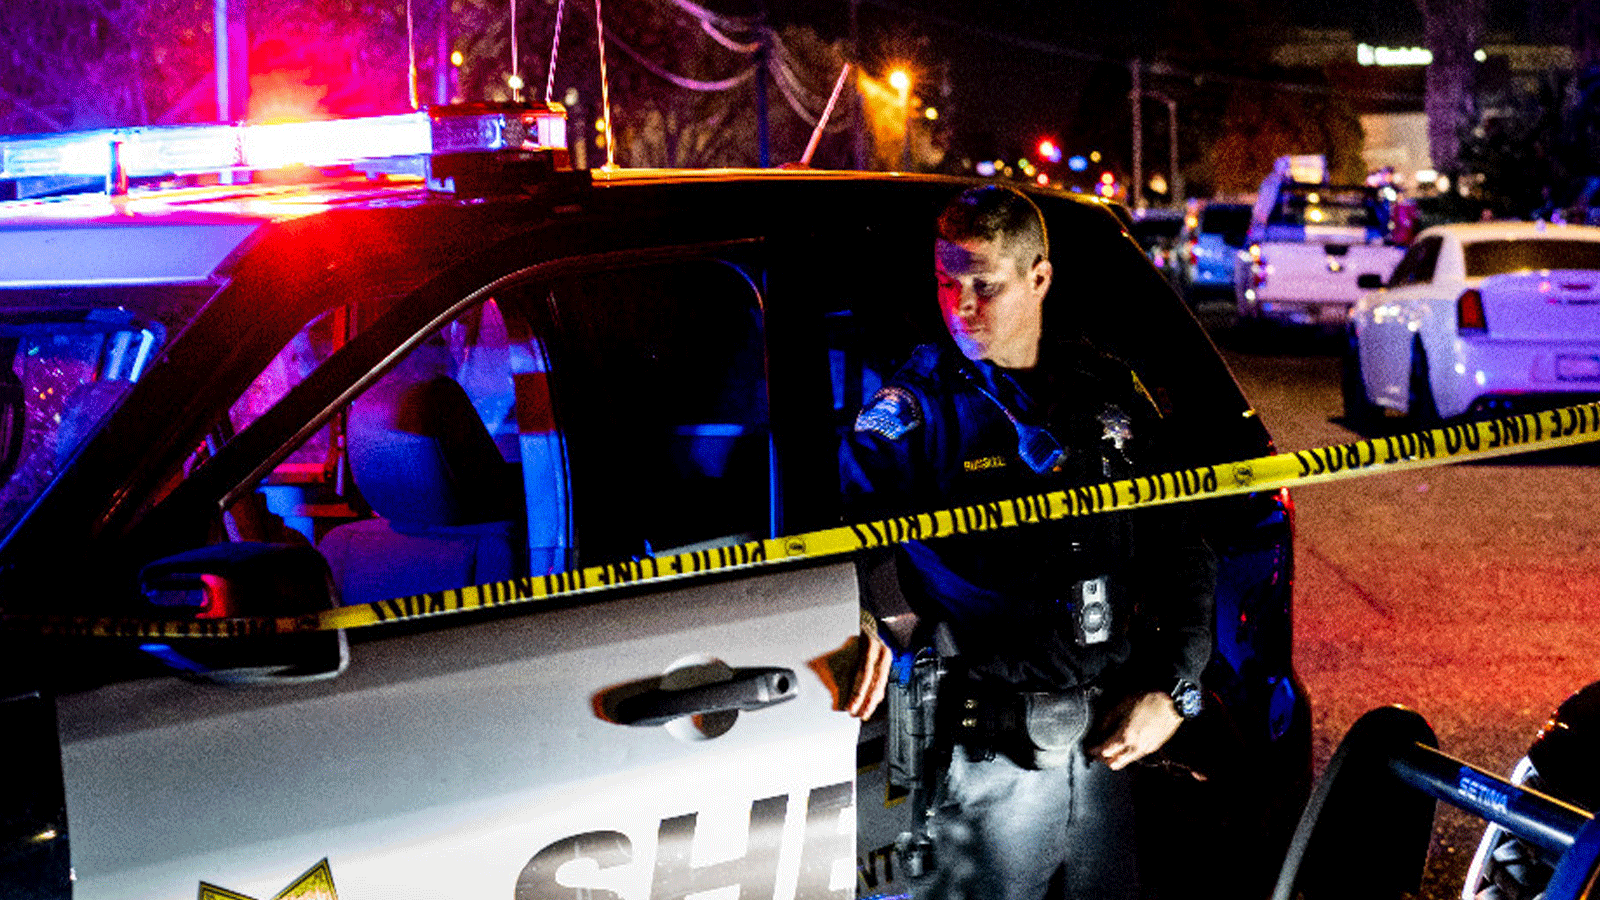 اعلنت الشرطة ان ستة اشخاص على الاقل قتلوا واصيب تسعة اخرون في اطلاق نار في ساكرامنتو عاصمة ولاية كاليفورنيا في ساعة مبكرة من صباح اليوم الاحد.